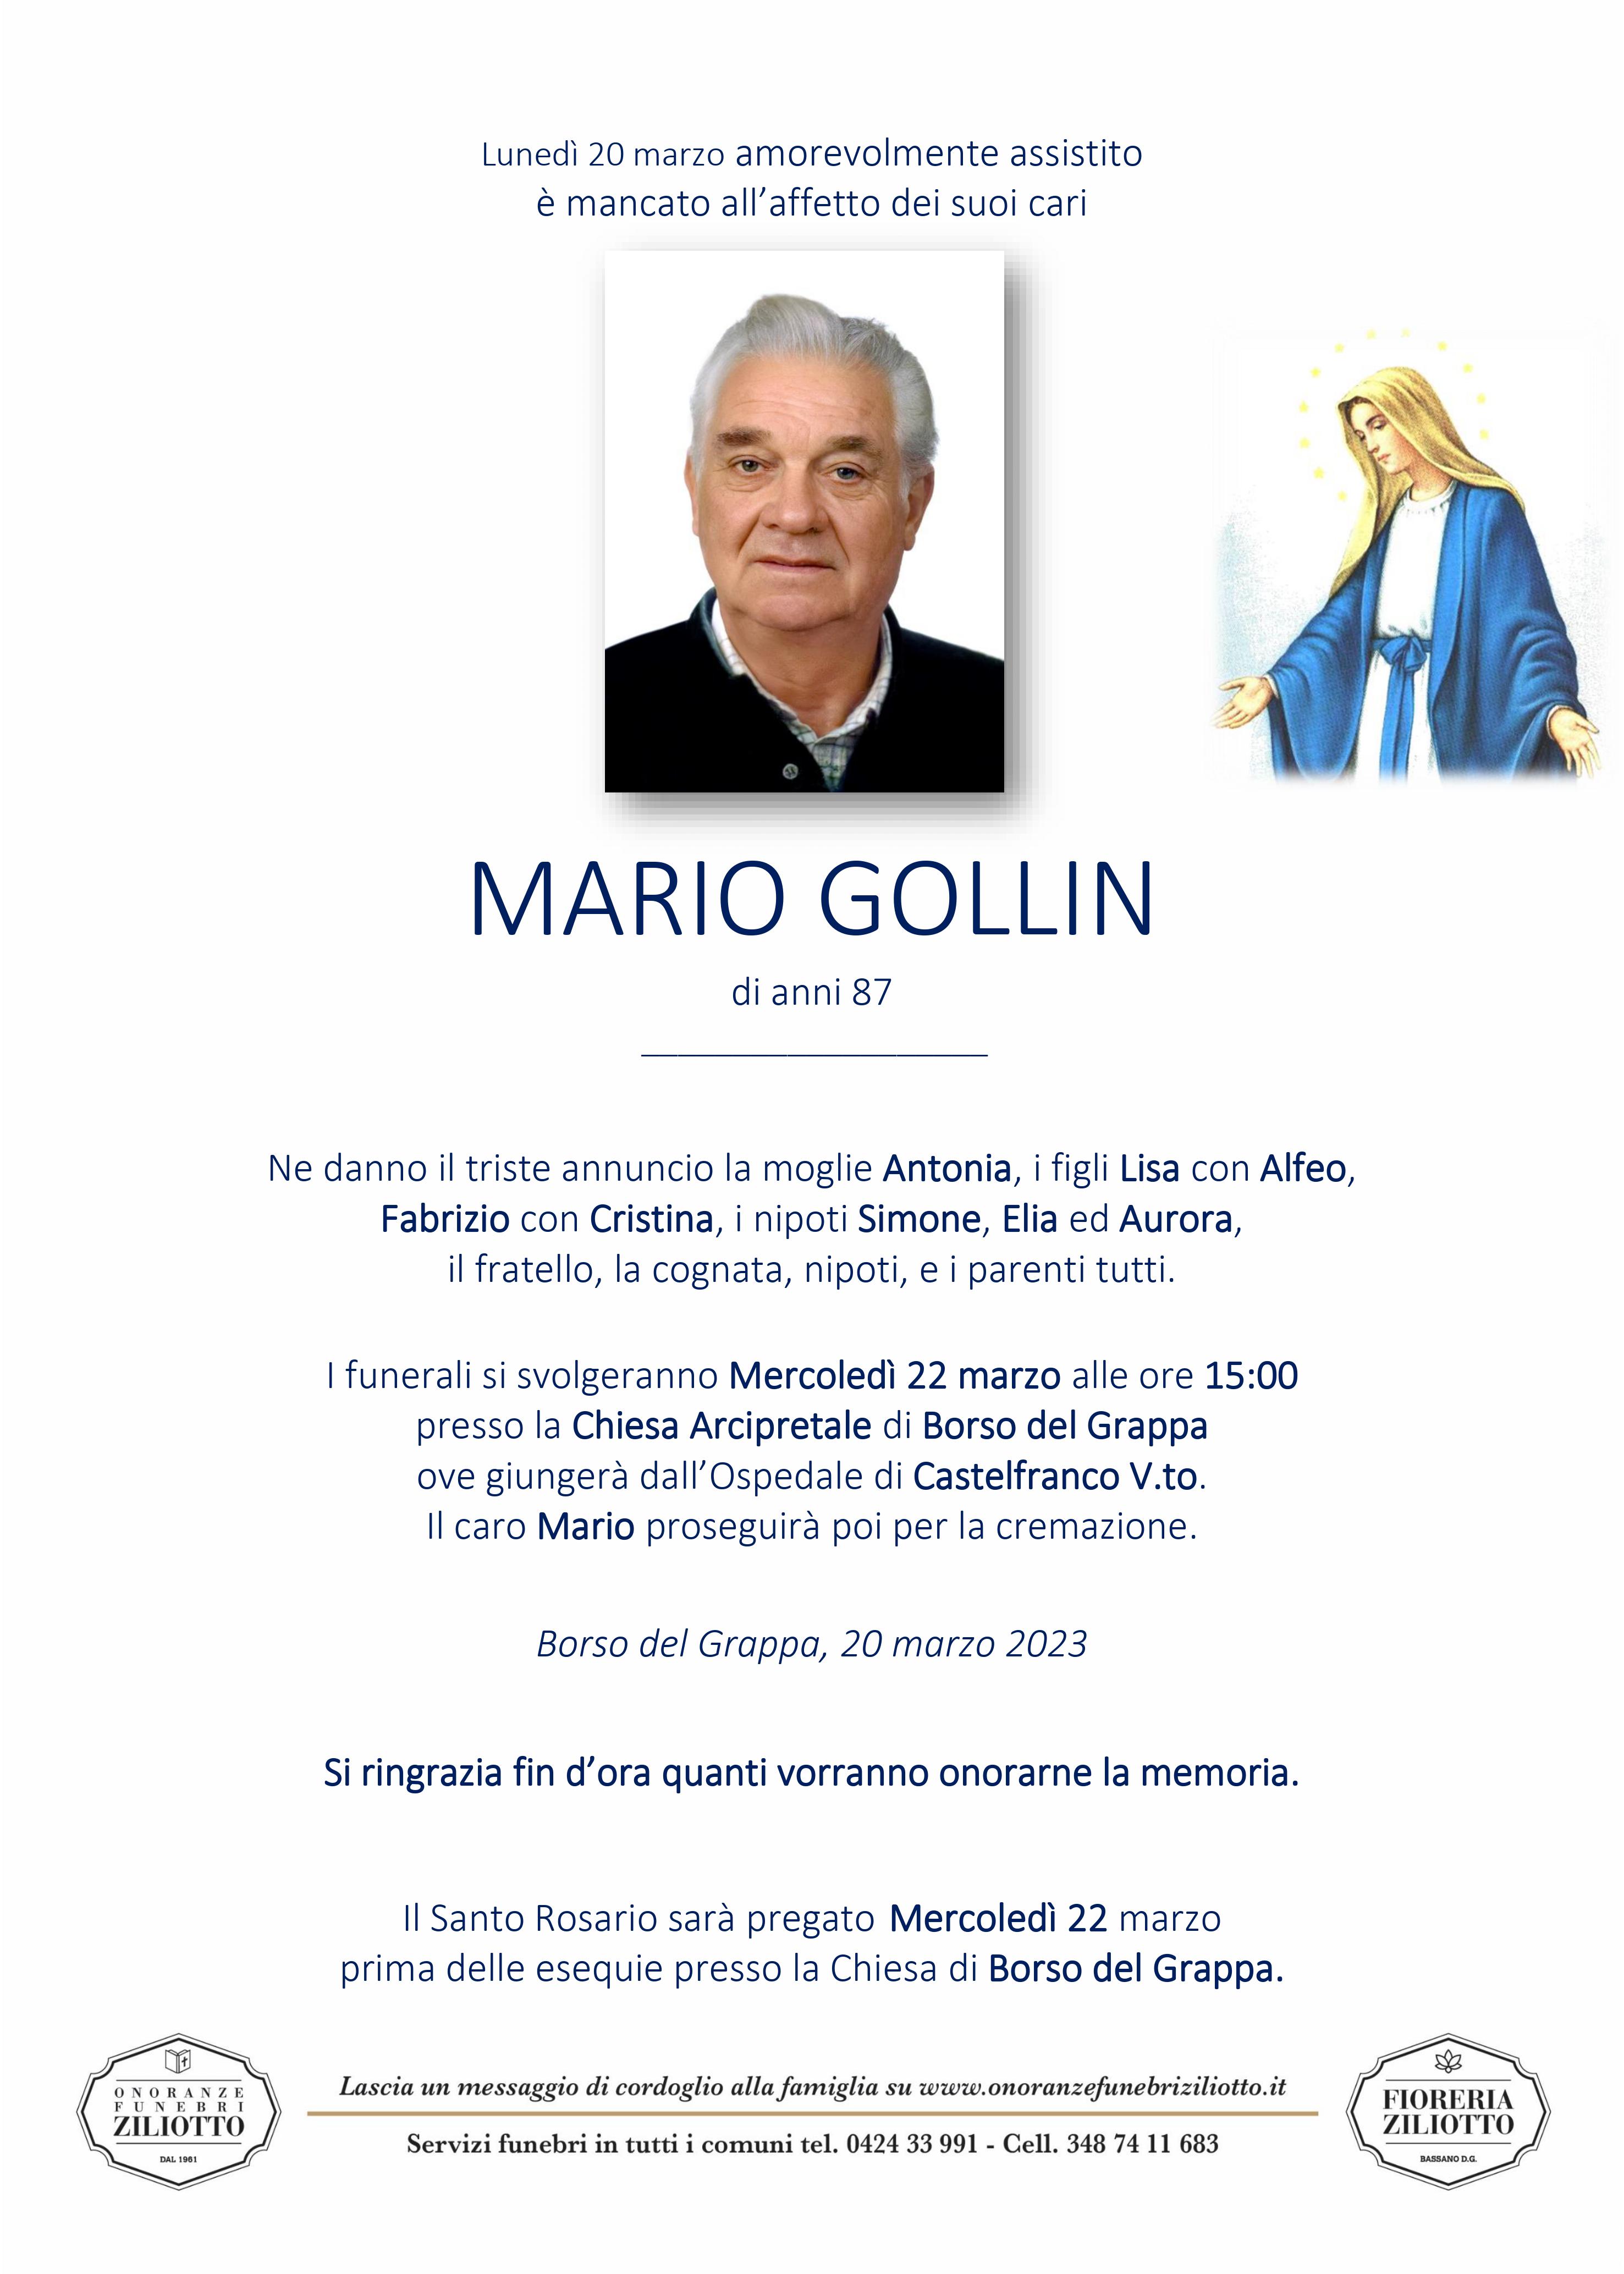 Mario Gollin - 87 anni - Borso del Grappa